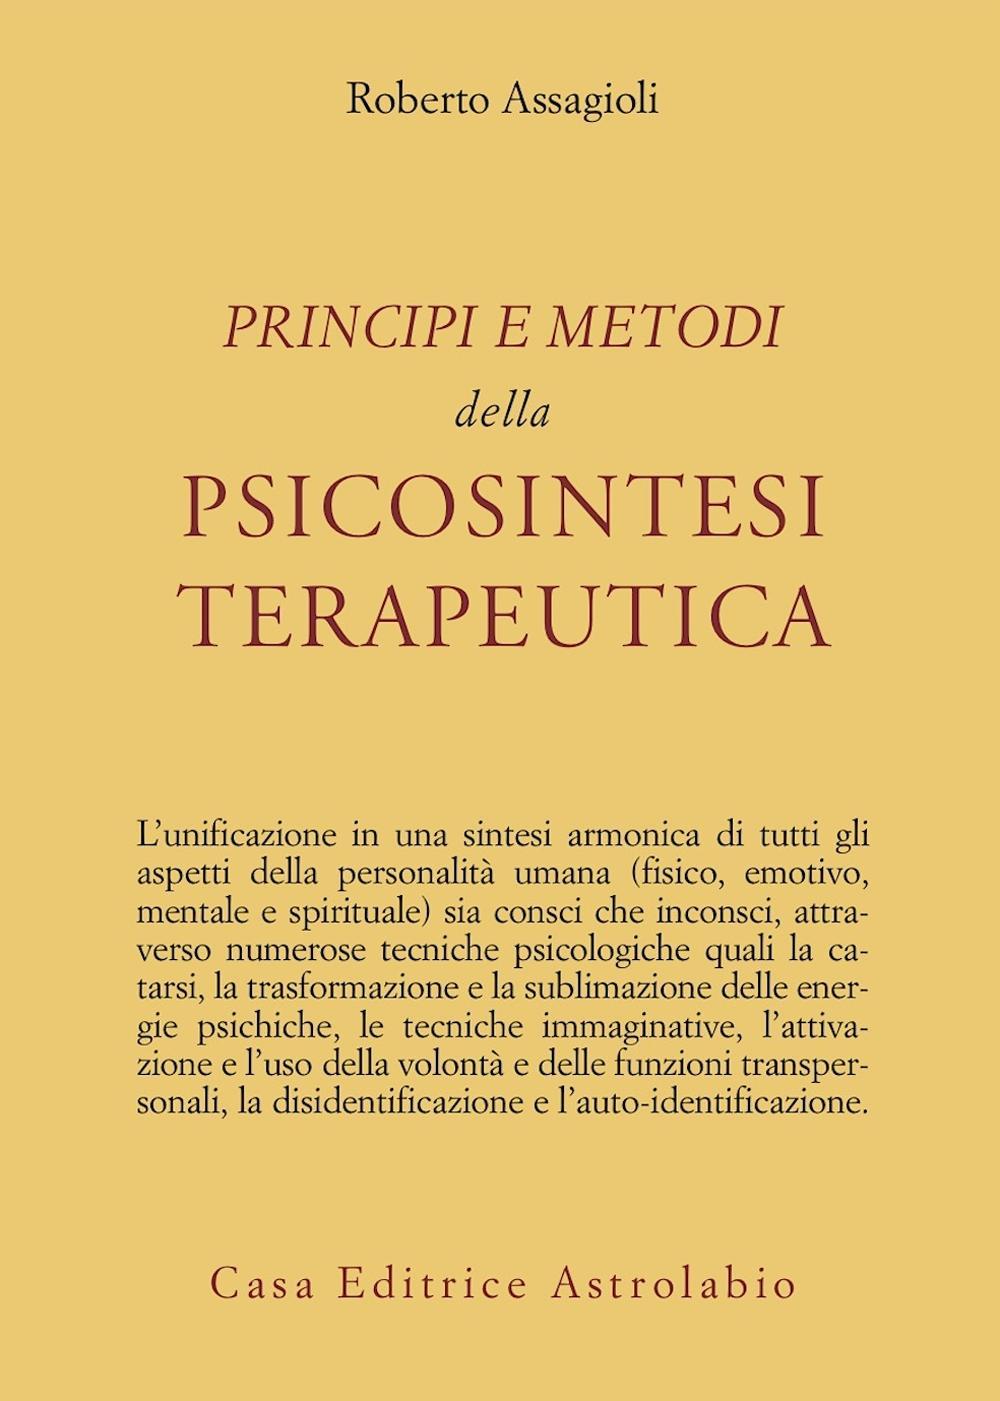 Könyv Principi e metodi della psicosintesi terapeutica Roberto Assagioli